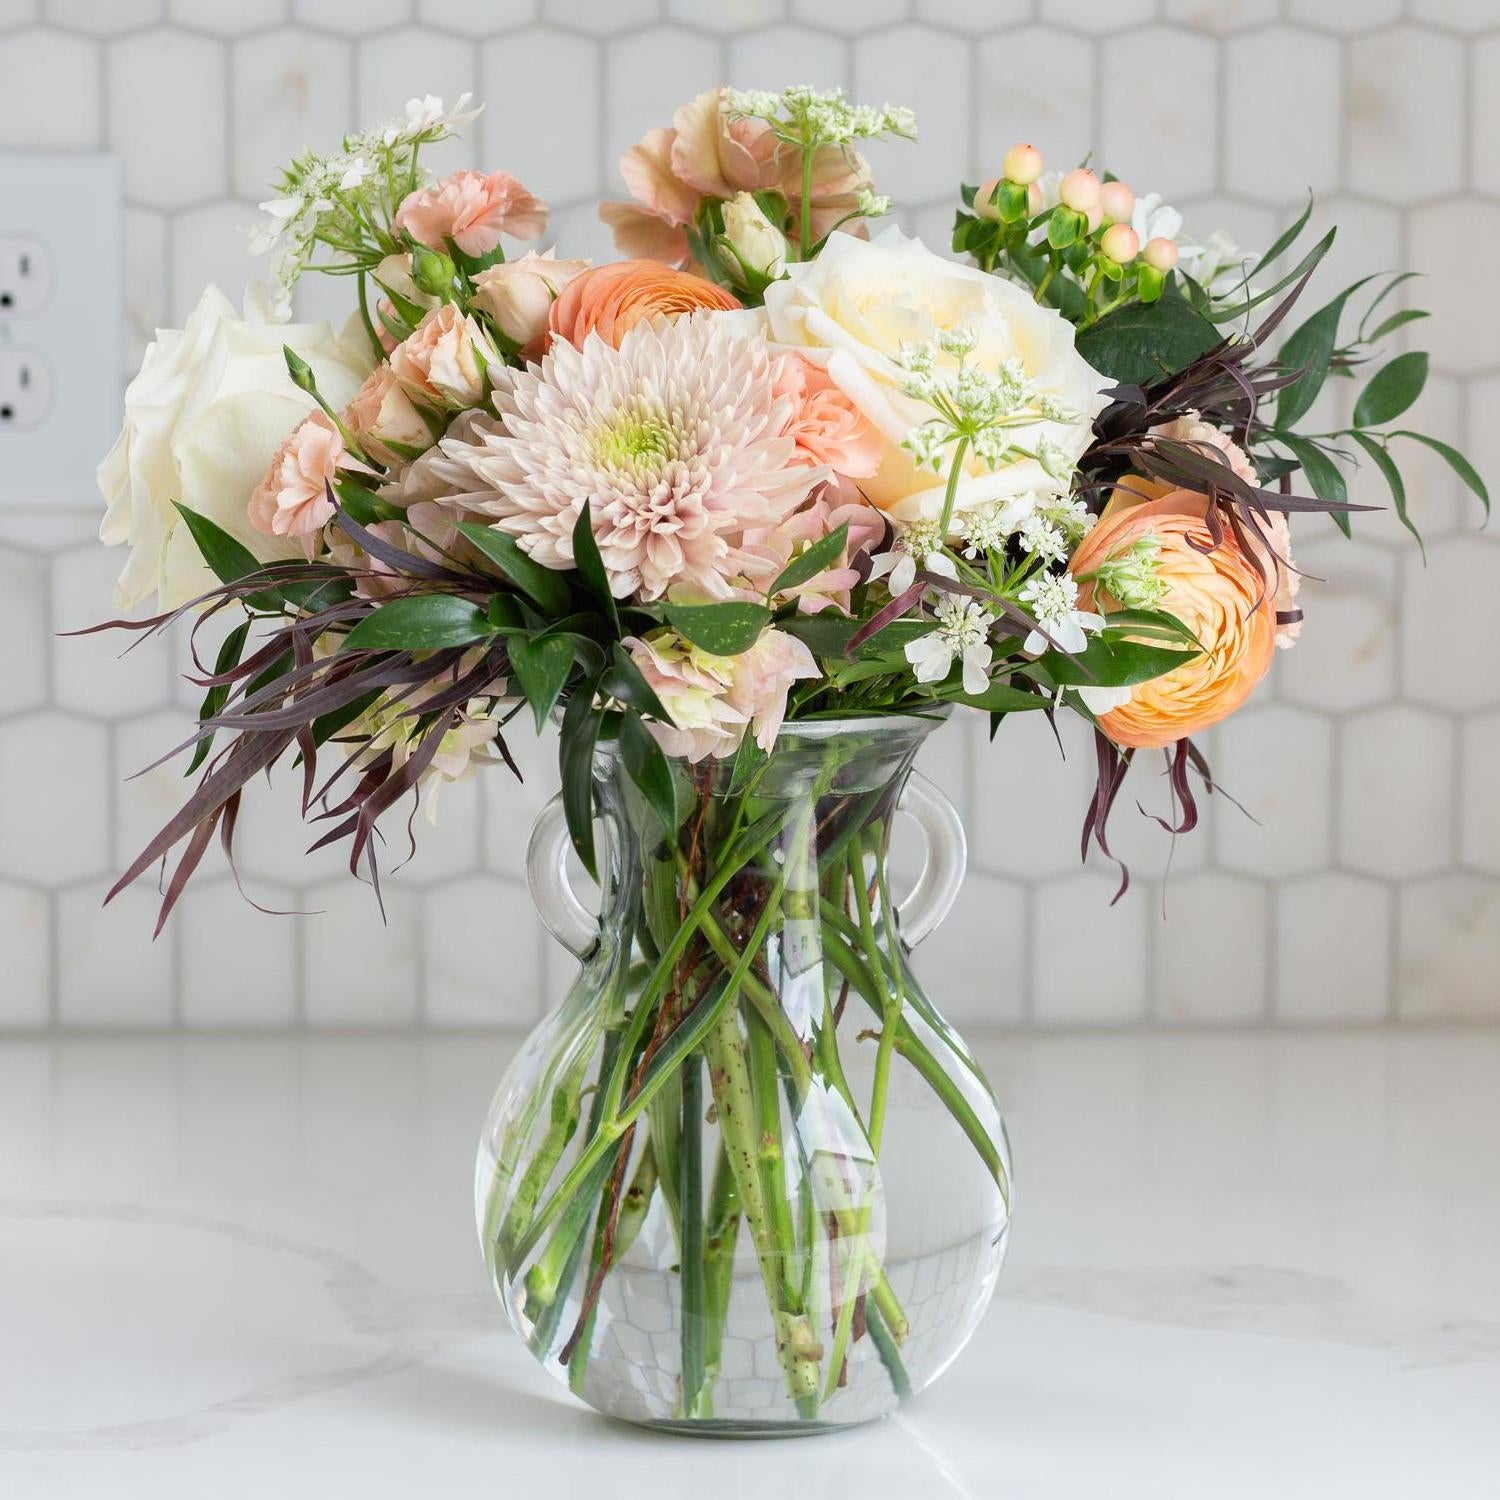 Elegant glass vase filled with blush pink roses and coral blooms against a tiled backsplash.